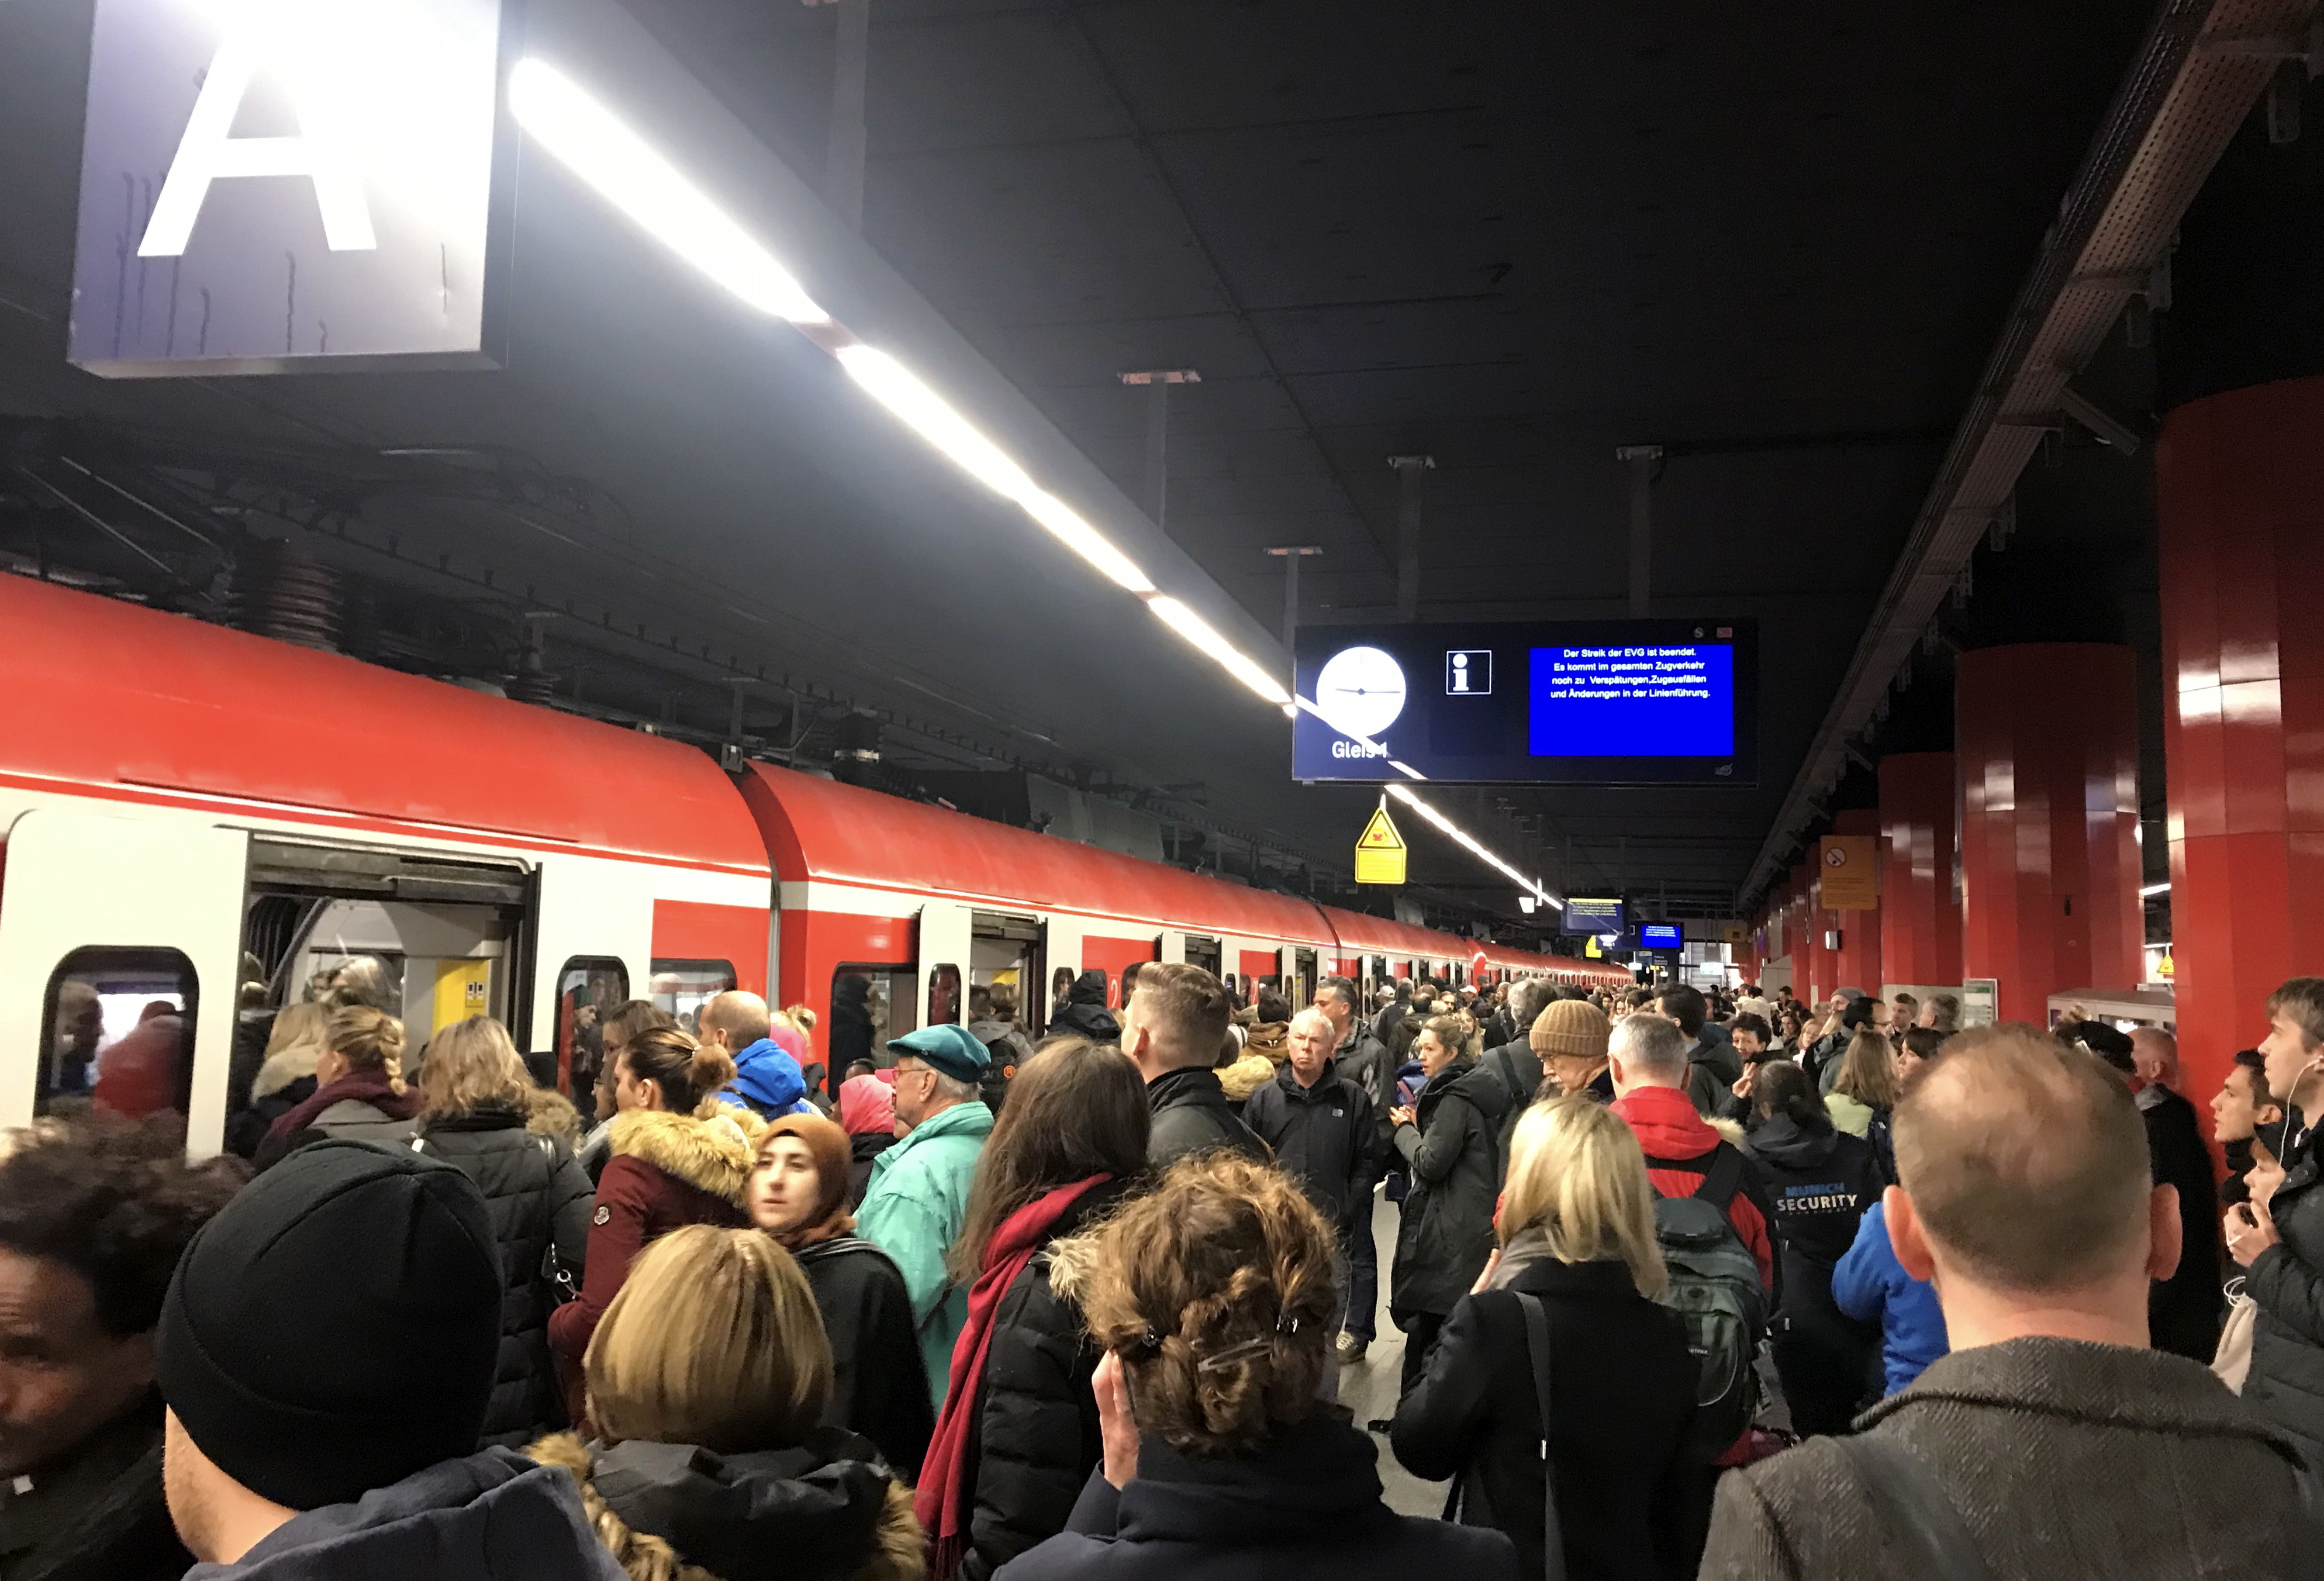 Zahlreiche Menschen warten am Hauptbahnhof auf eine S-Bahn, nachdem ein Streik den Zugverkehr lahmgelegt hat. Die Eisenbahn- und Verkehrsgewerkschaft (EVG) hat nach abgebrochenen Tarifgesprächen zu einem bundesweiten Warnstreik aufgerufen.